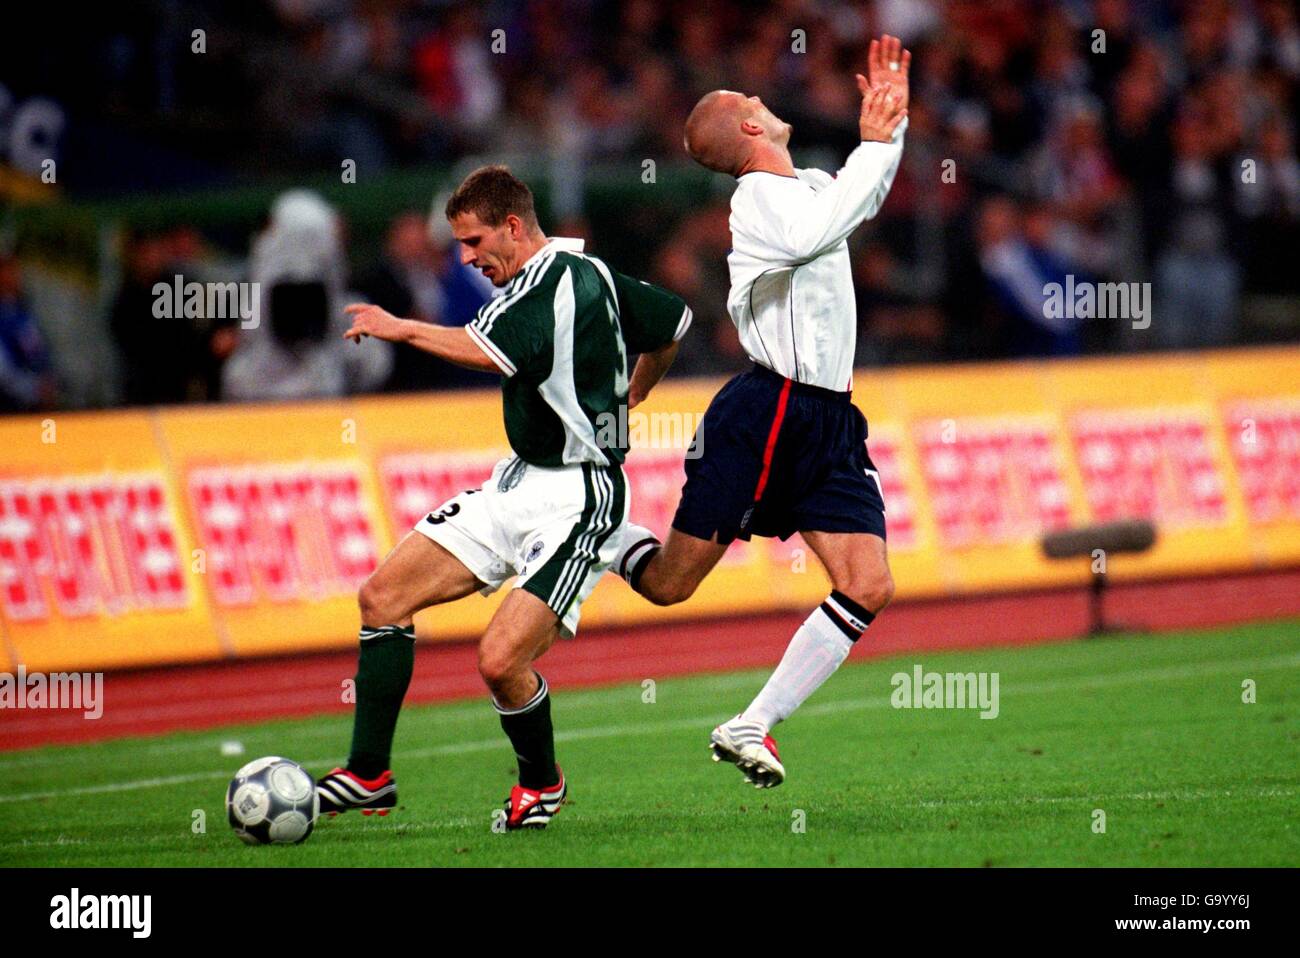 Football - coupe du monde 2002 qualificateur - Groupe 9 - Allemagne / Angleterre.Le David Beckham (r) d'Angleterre tourne autour de lui alors qu'il est fouillé par Jorg Bohme (l) d'Allemagne Banque D'Images